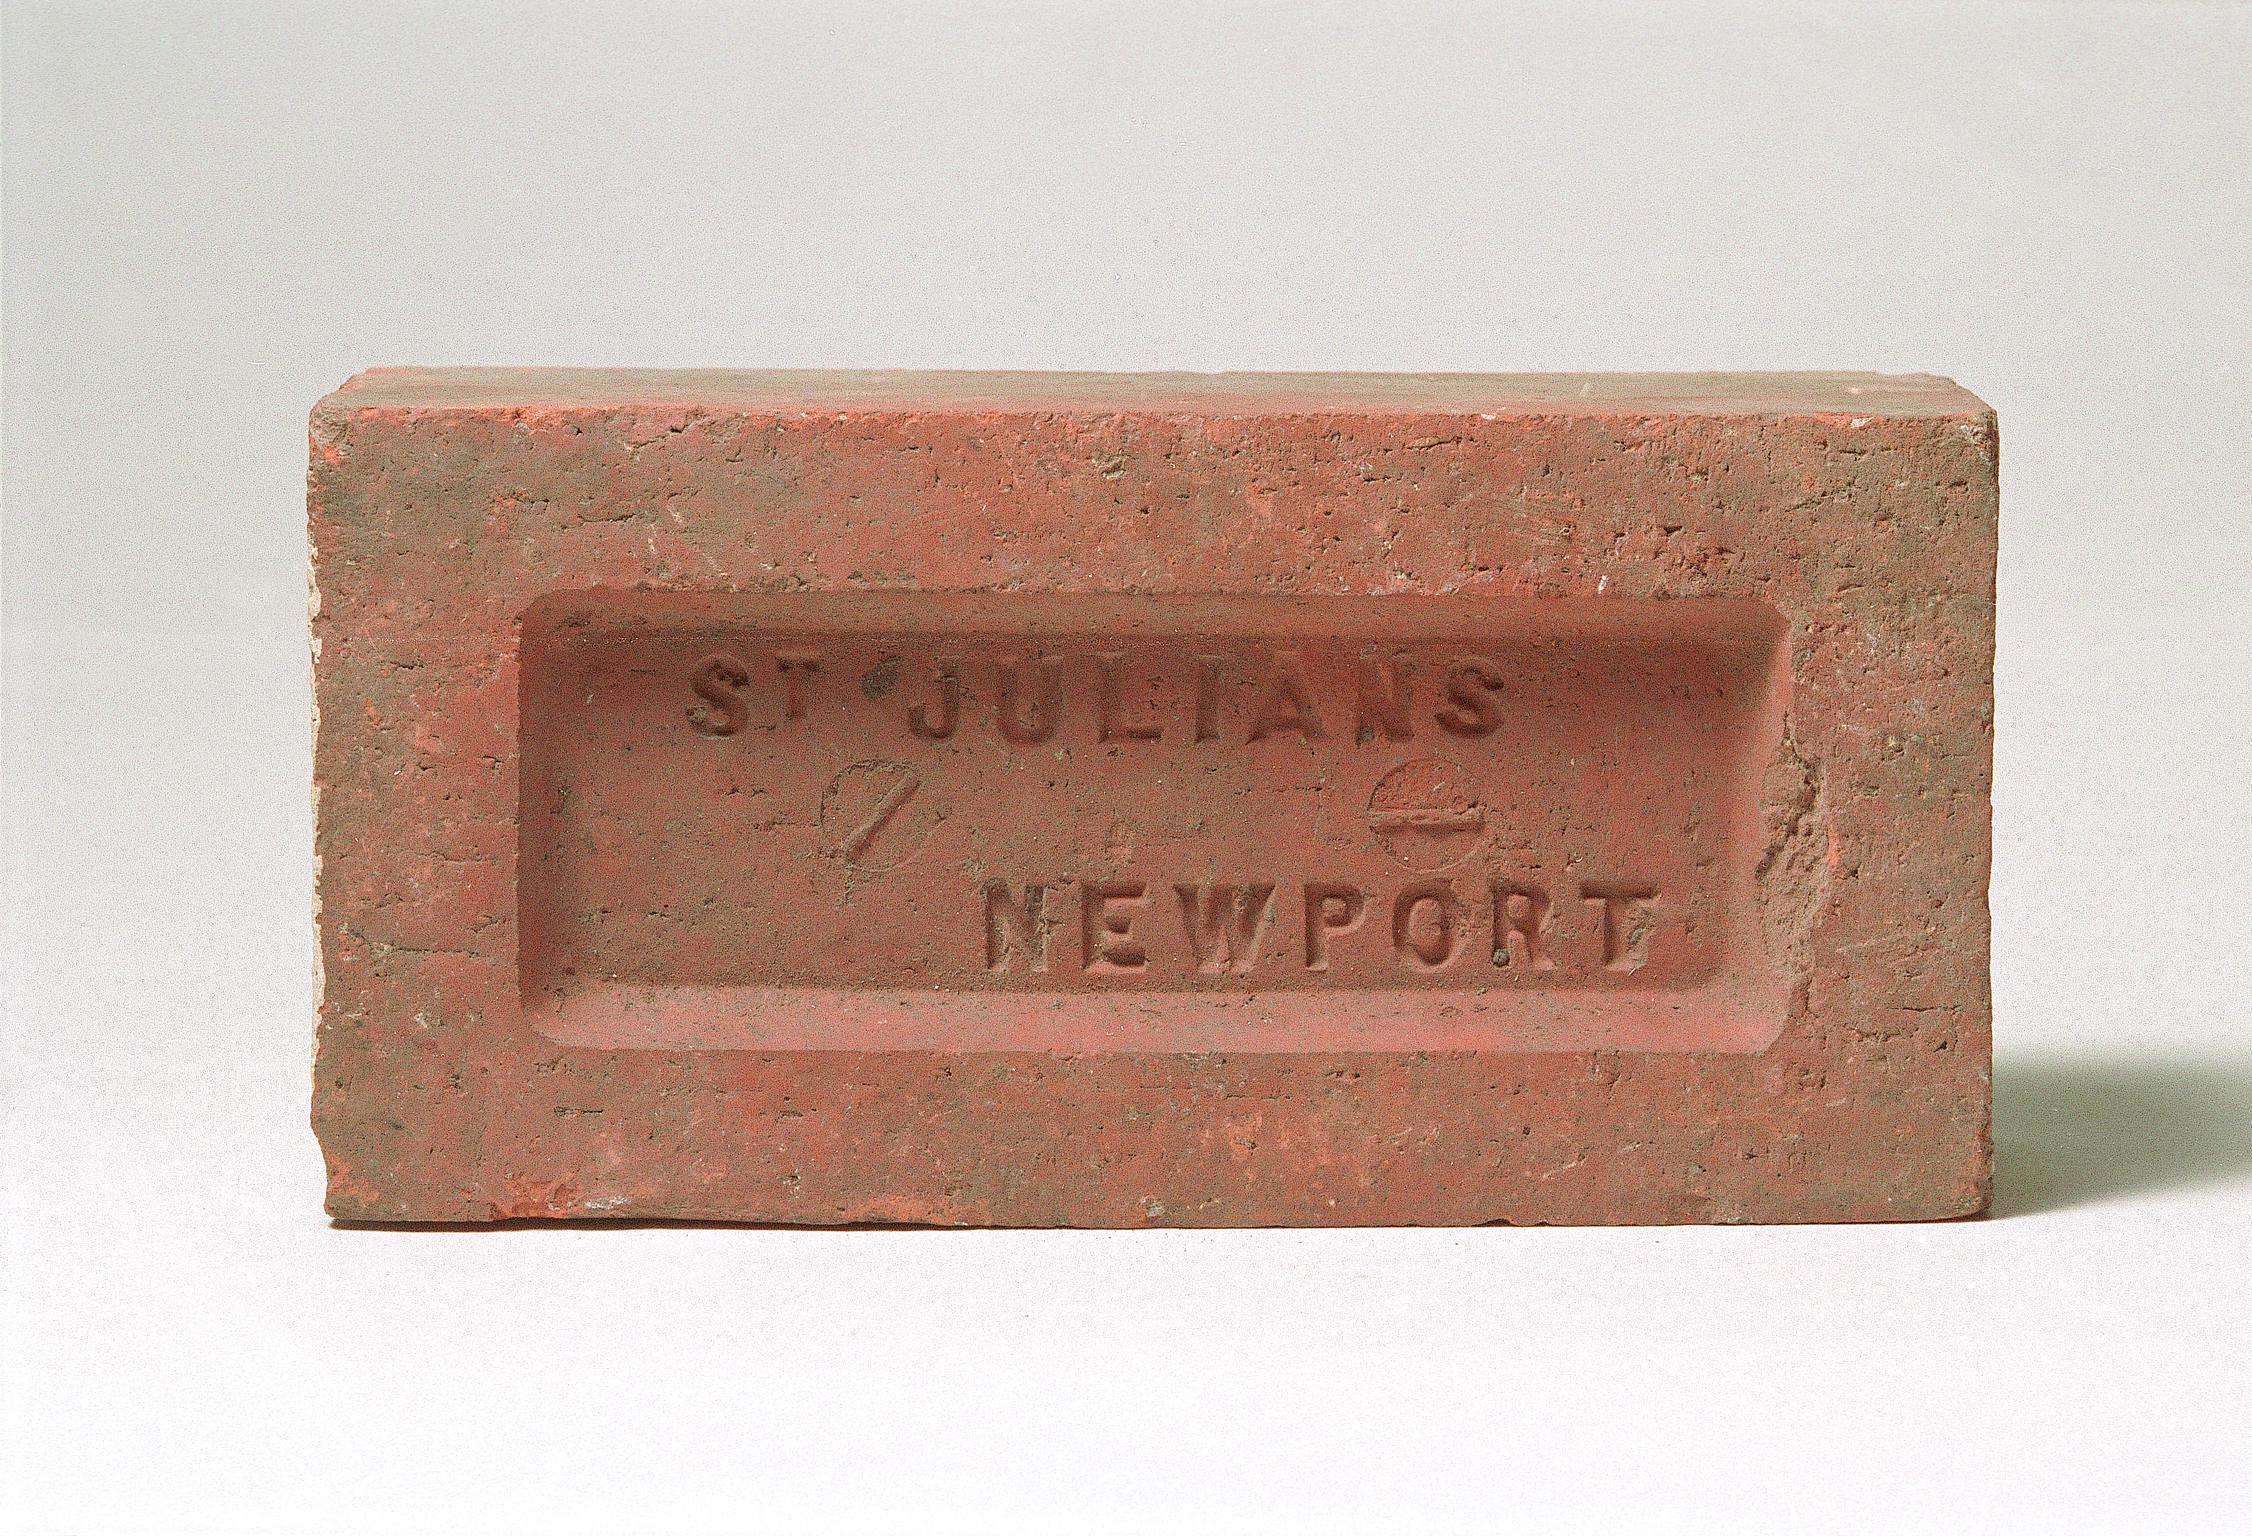 St. Julians Newport, brick